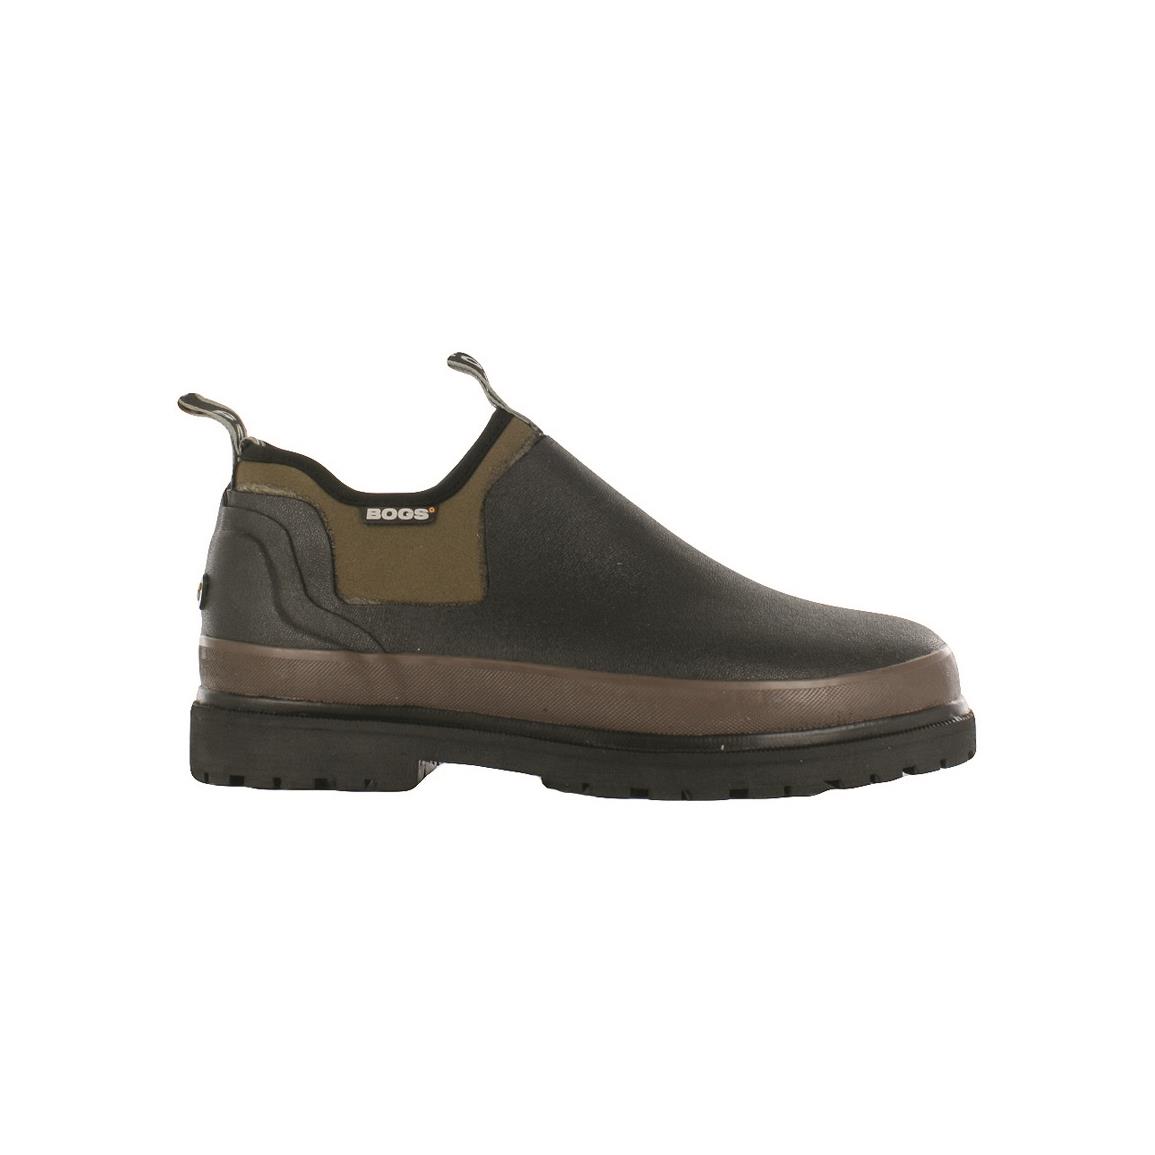 Bogs Men's Tillamook Bay Waterproof Slip-On Rubber Shoes - 677839 ...